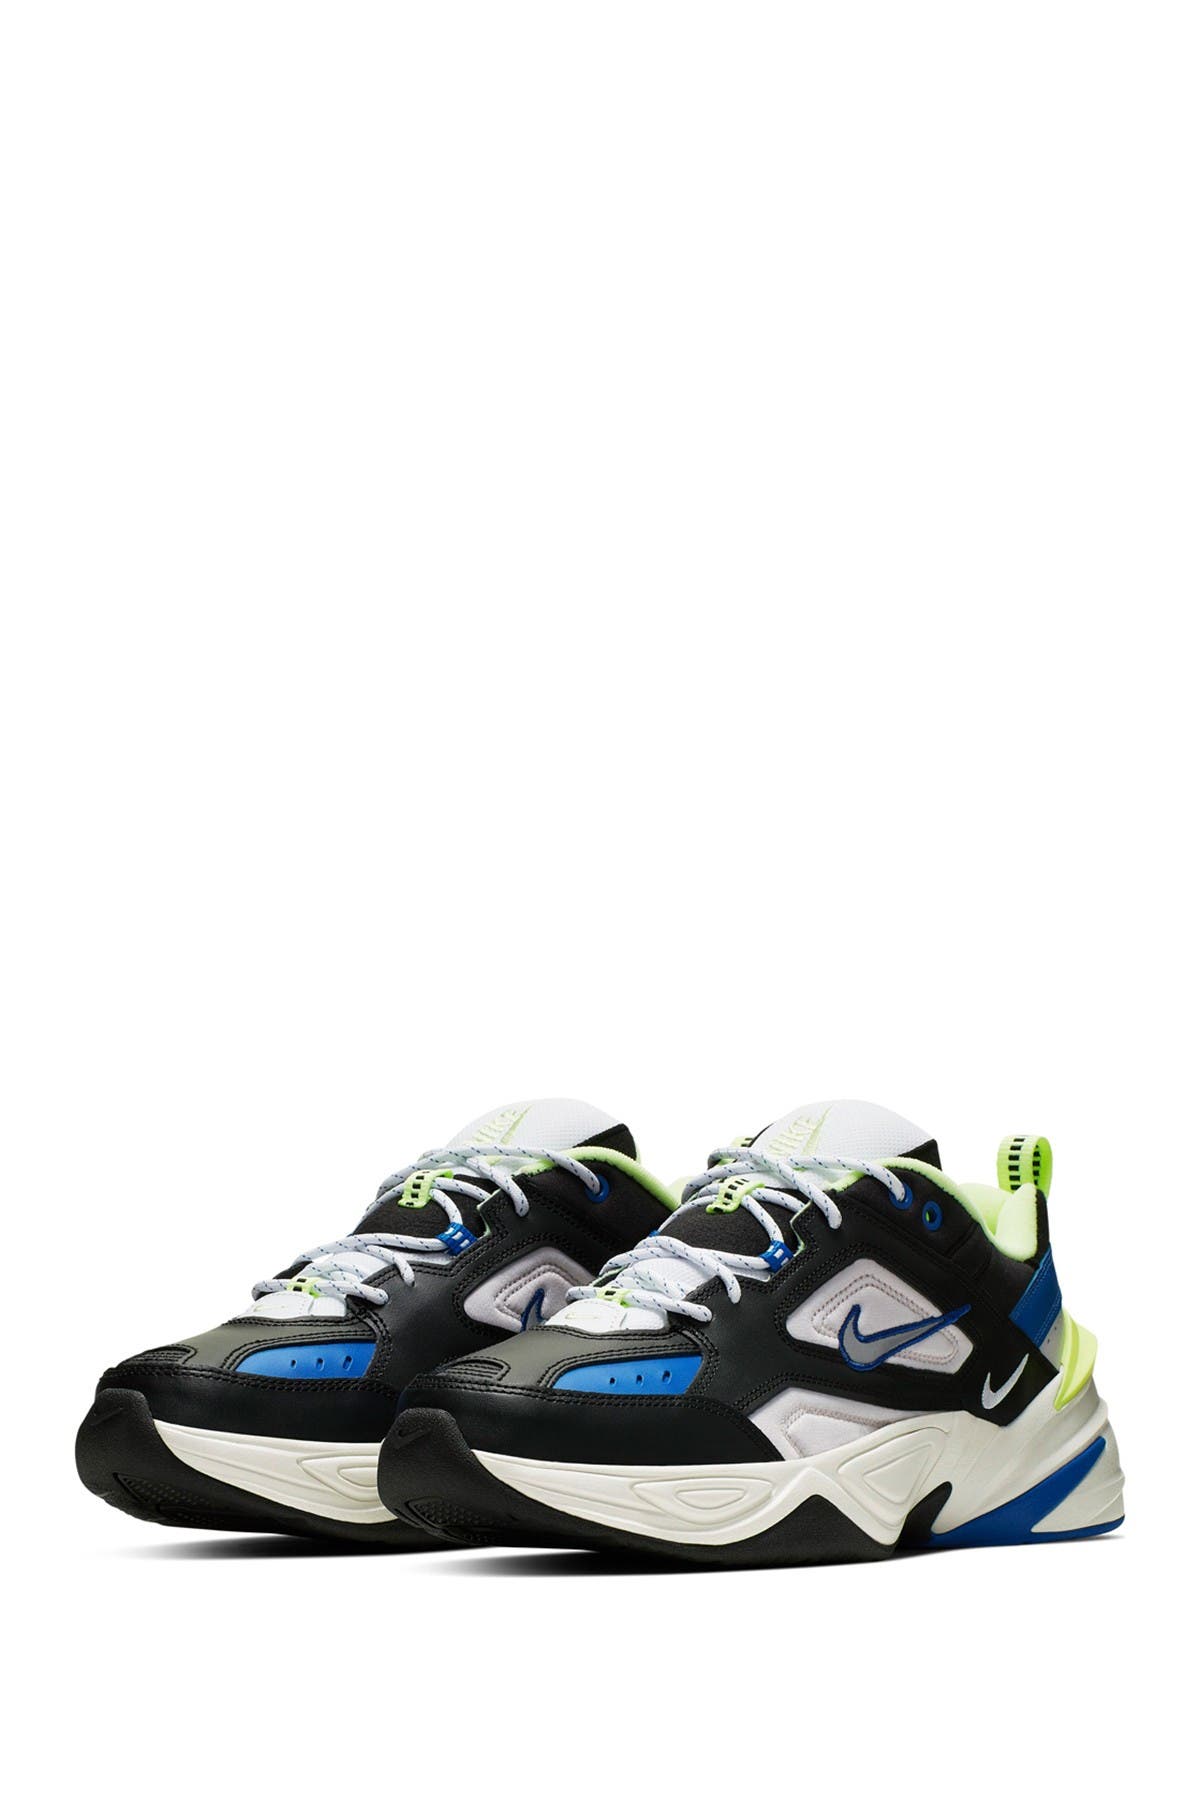 Nike | M2K Tekno Sneaker | Nordstrom Rack